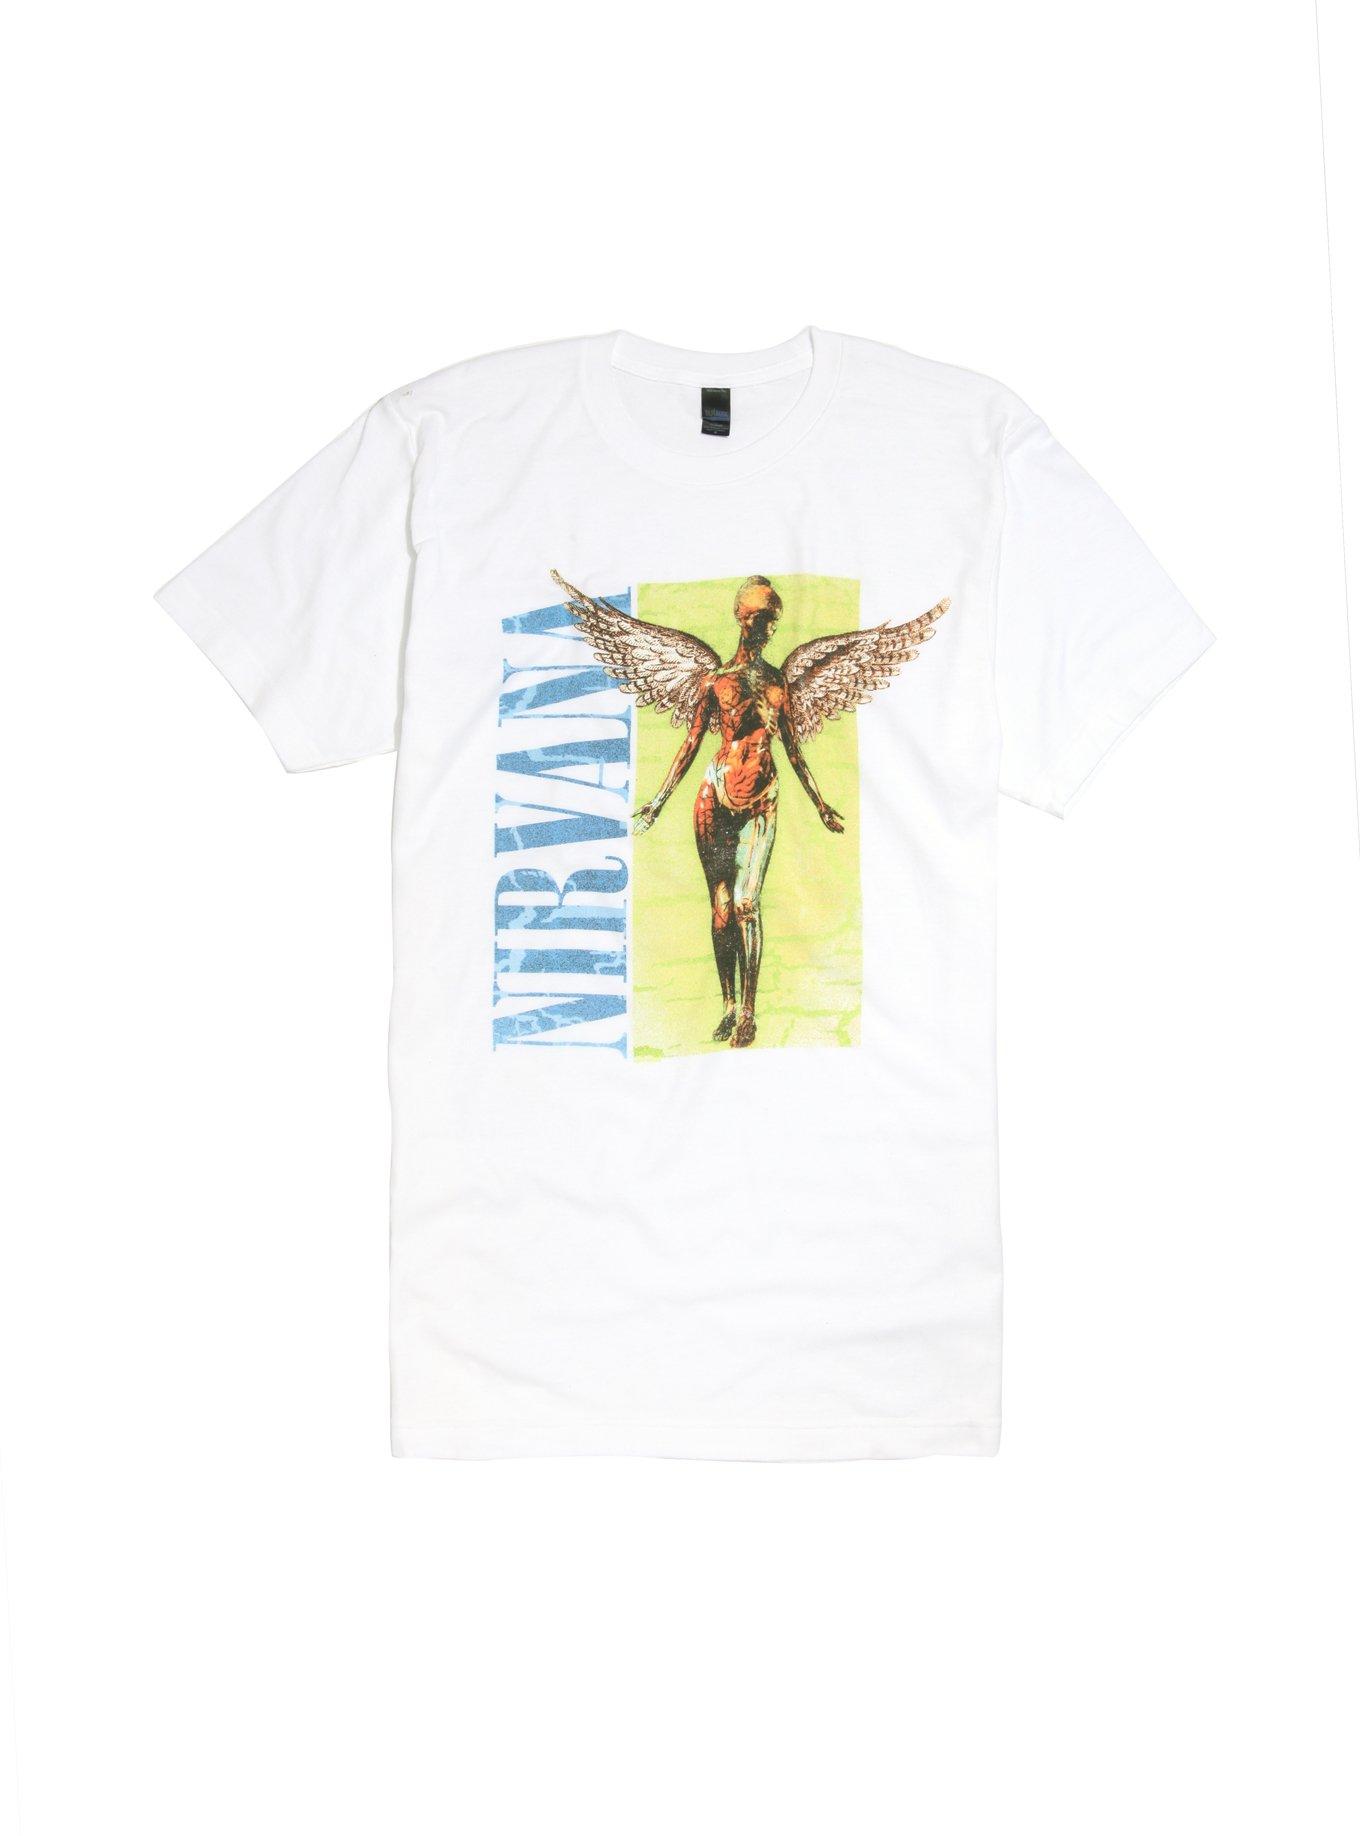 Nirvana In Utero T-Shirt | Hot Topic